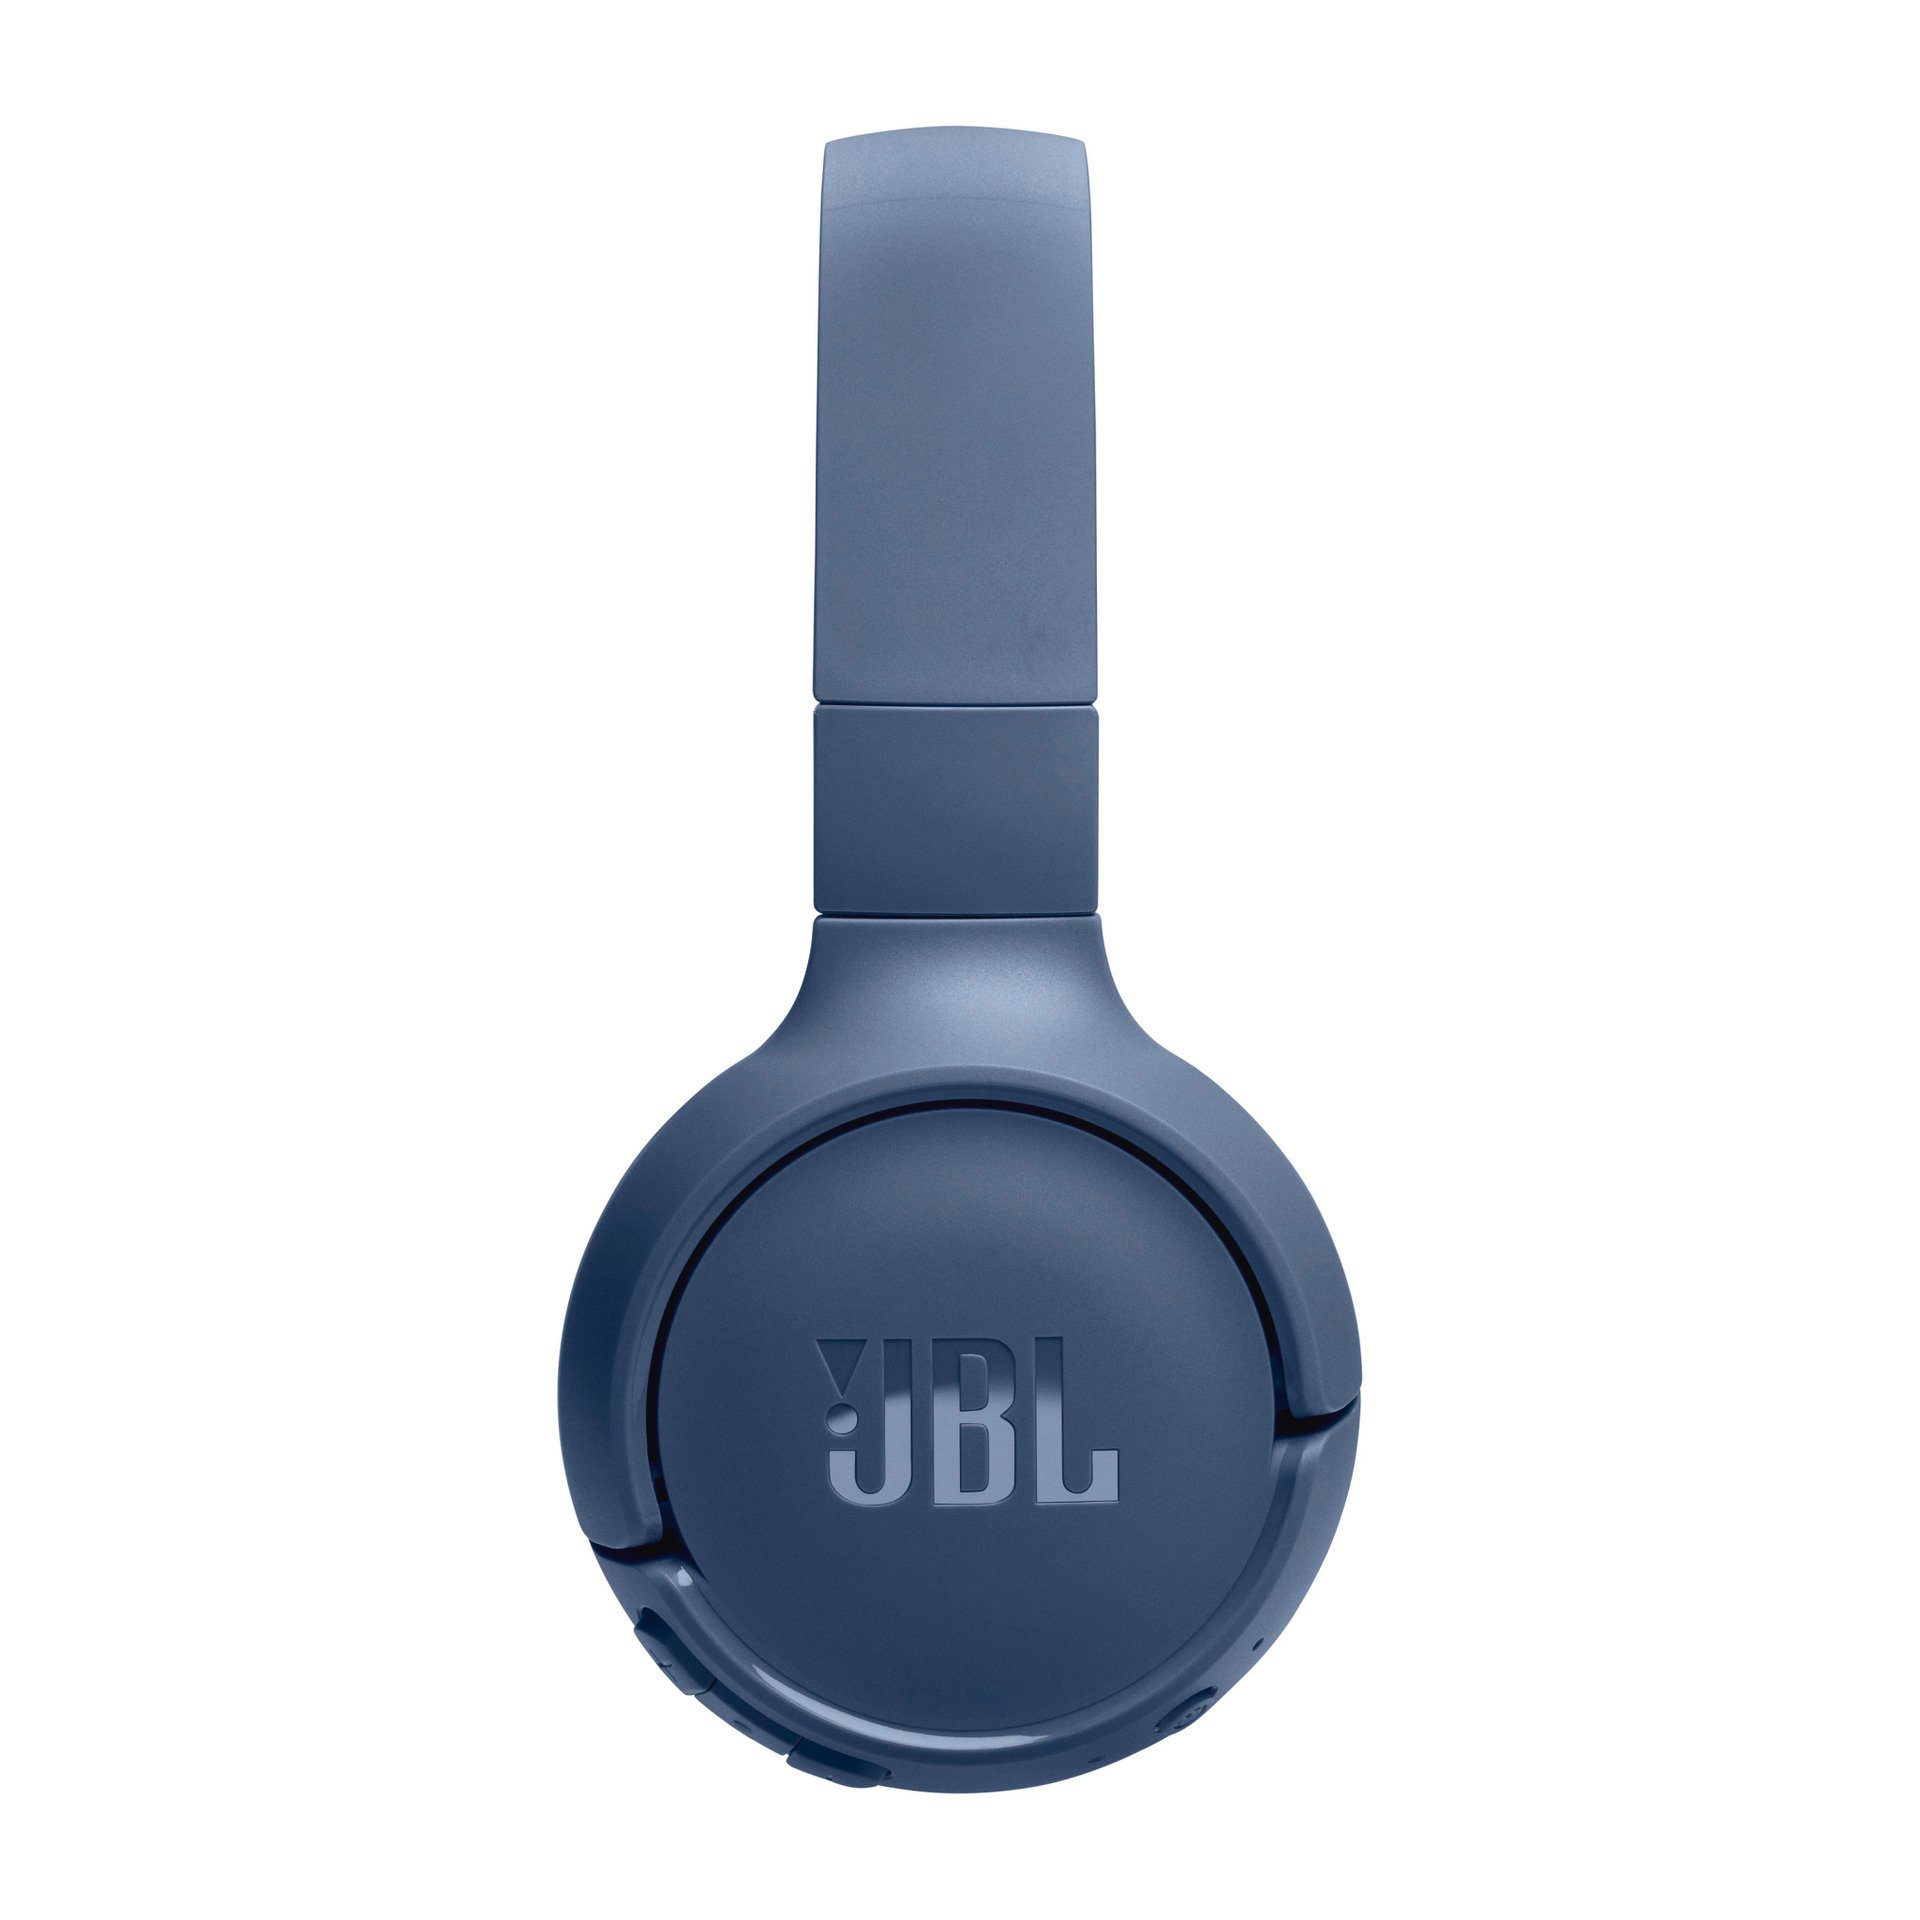 Over-Ear-Kopfhörer Blau BT JBL Tune 520